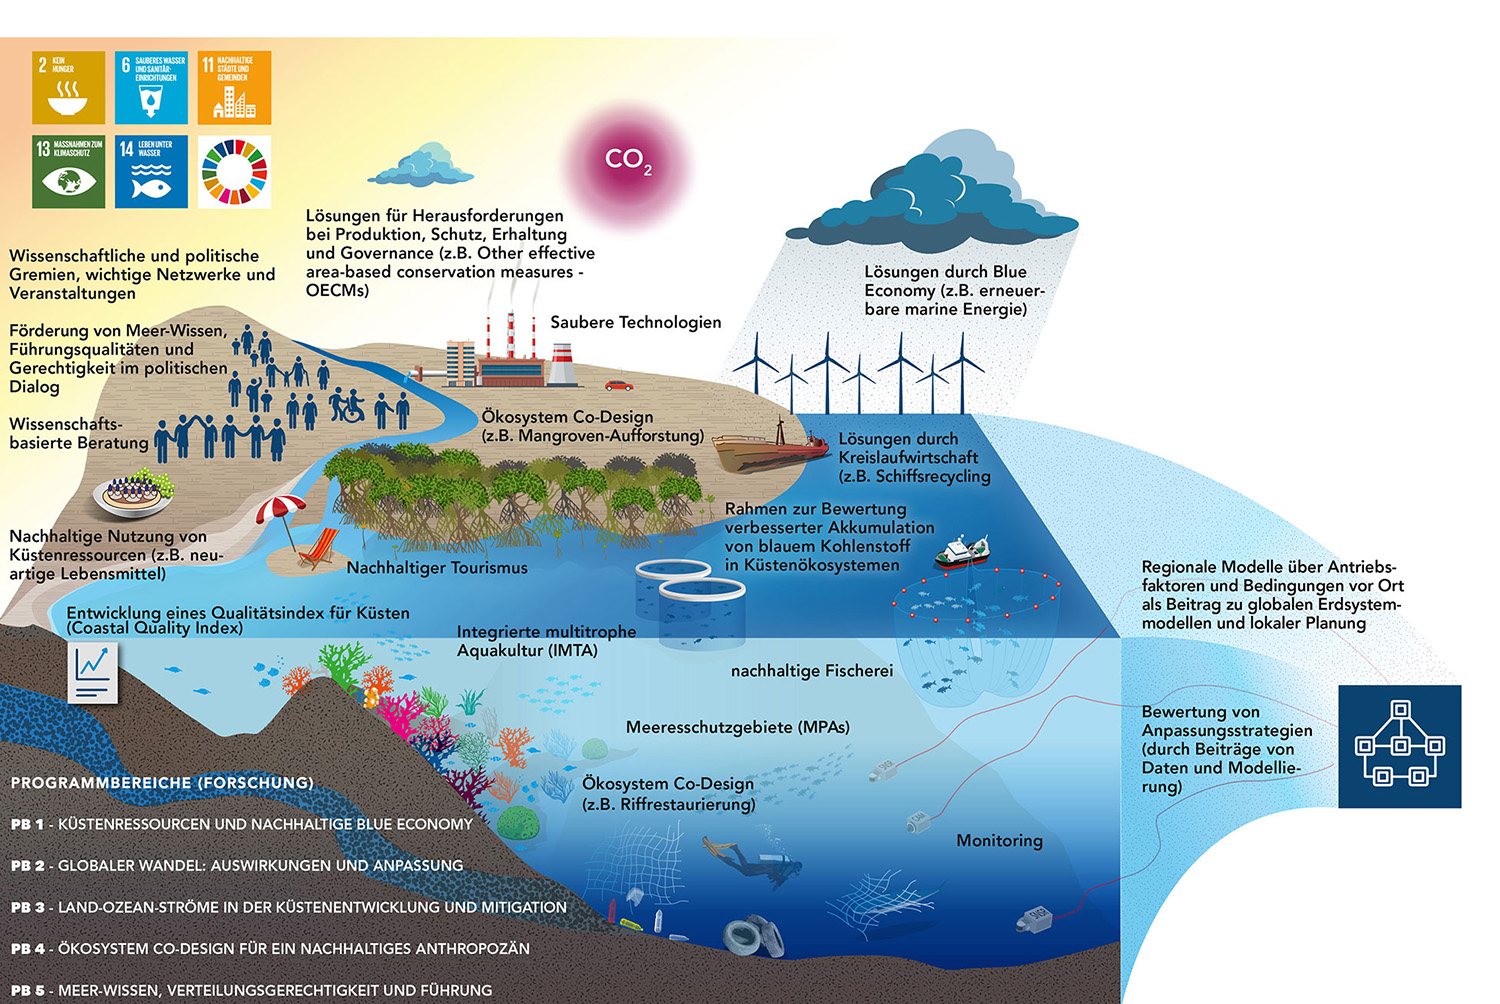  Das Bild zeigt Lösungsansätze an denen das ZMT arbeitet eingebettet in die Illsztration eines Küstenökosystems